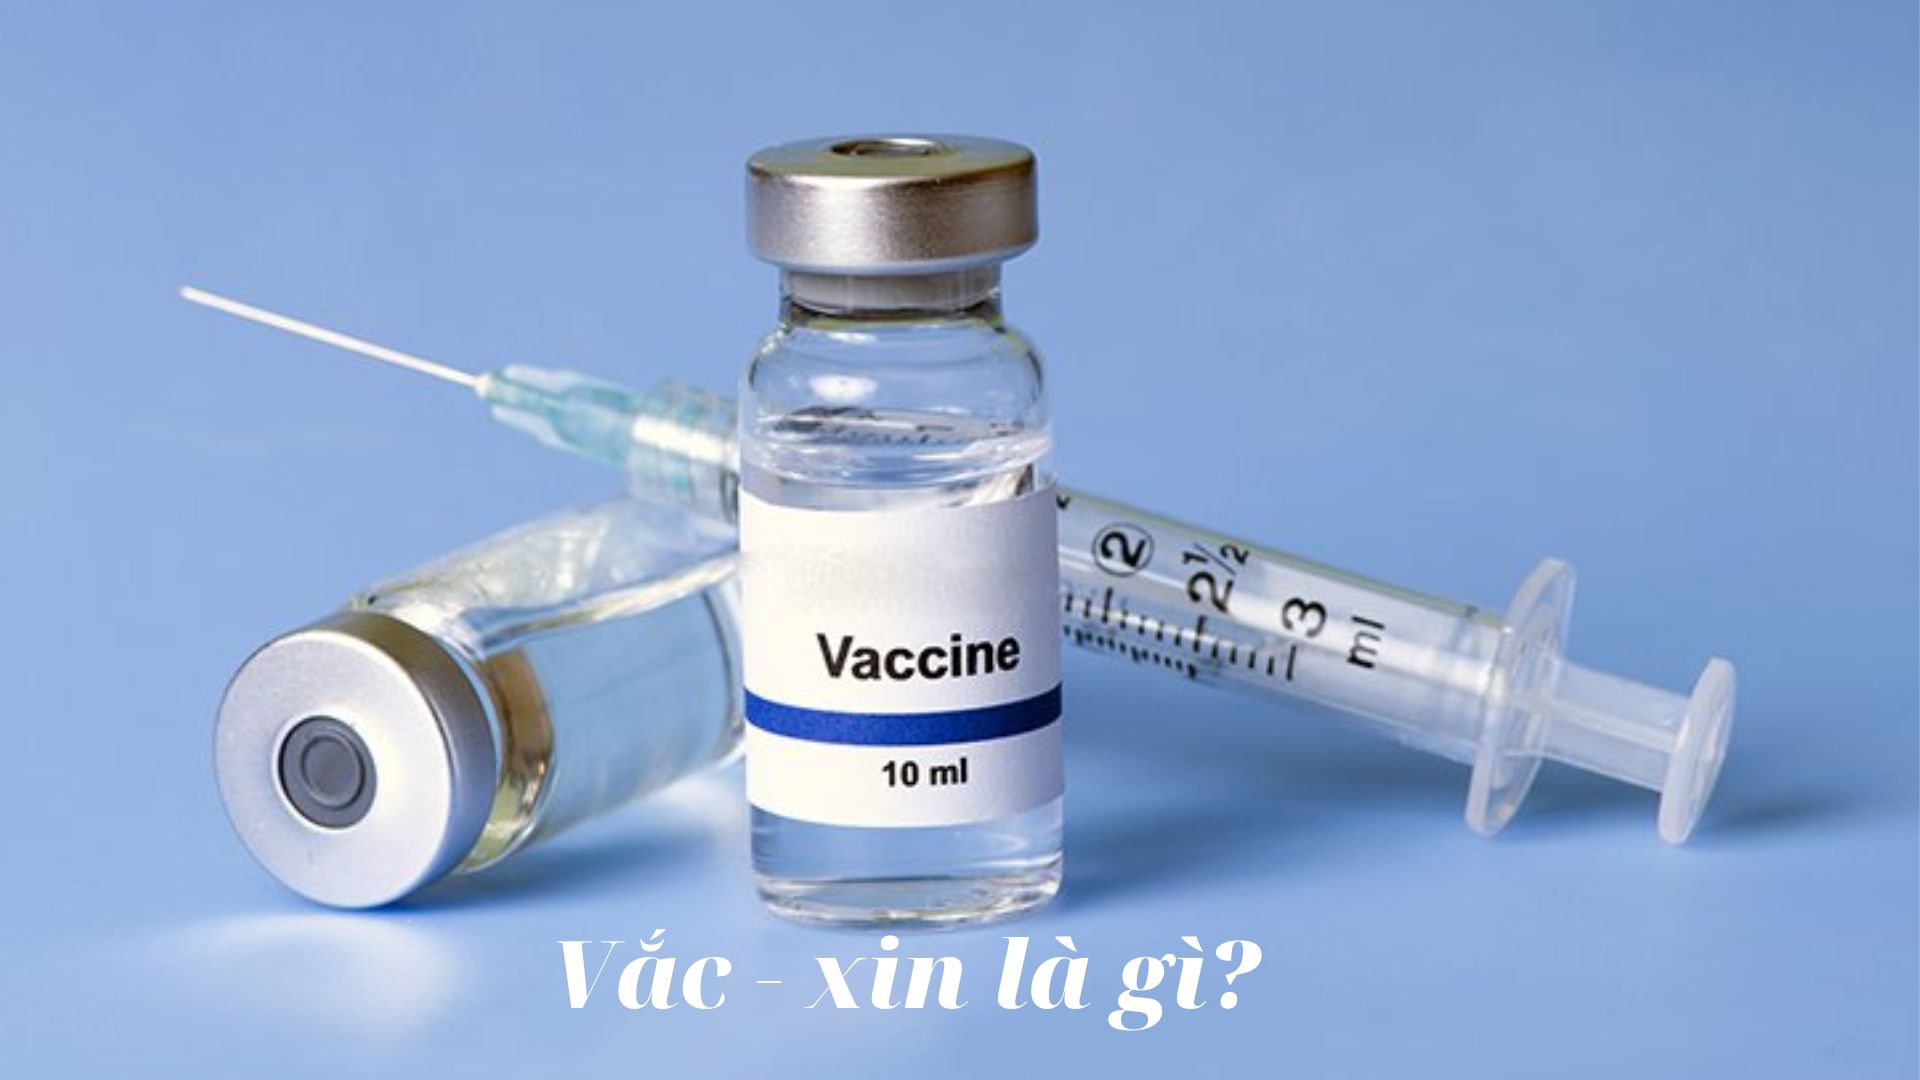 Vắc xin là gì